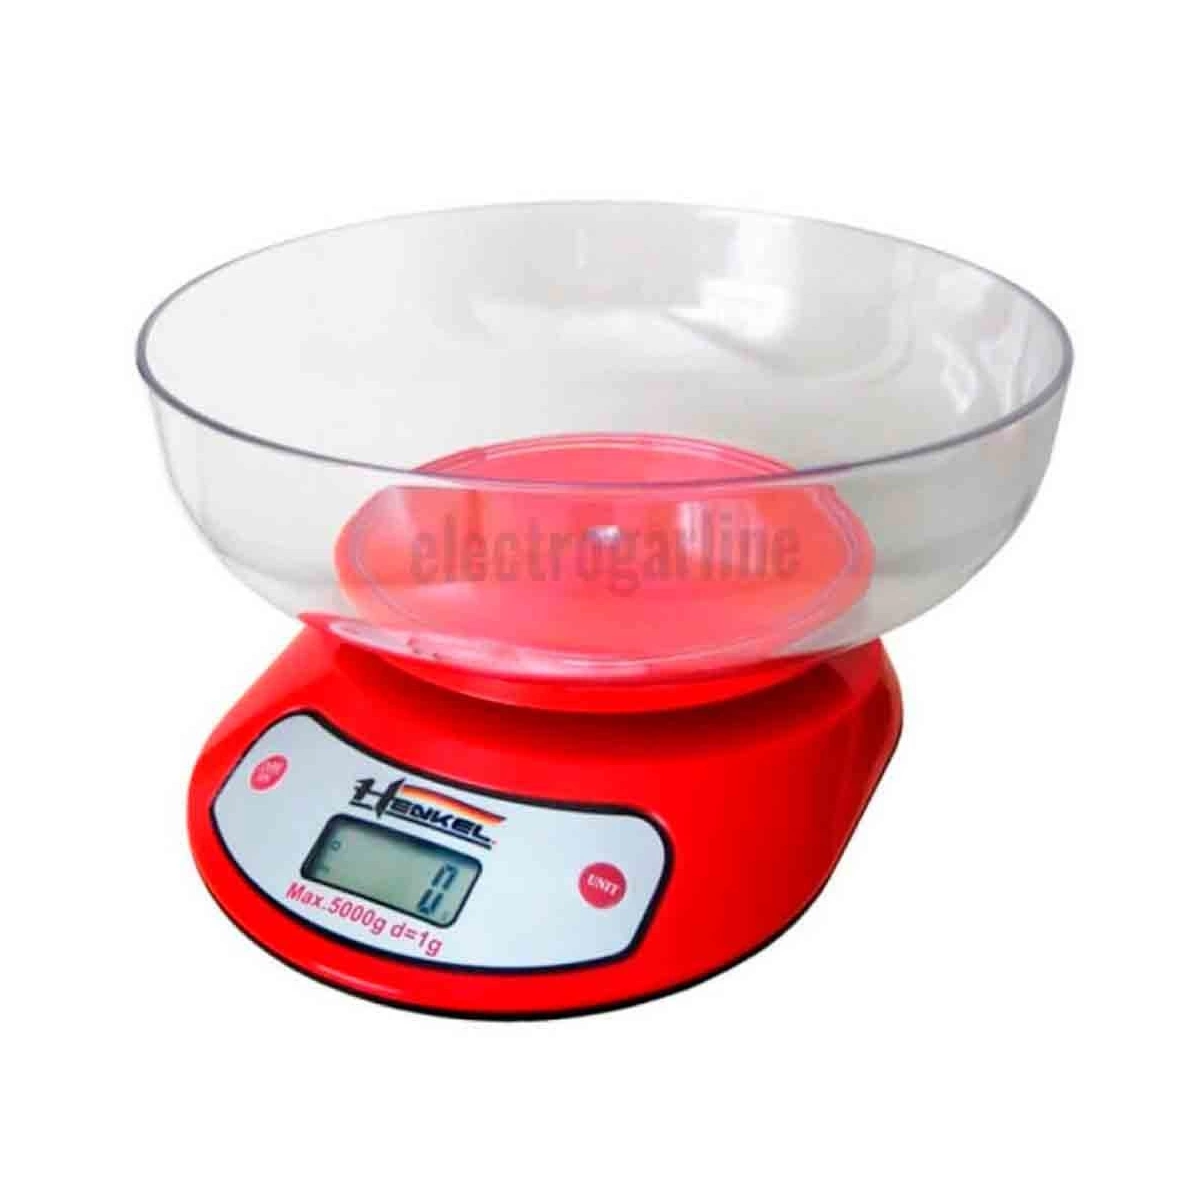 Balanza cocina reposteria con plato digital 1g a 5kg henkel